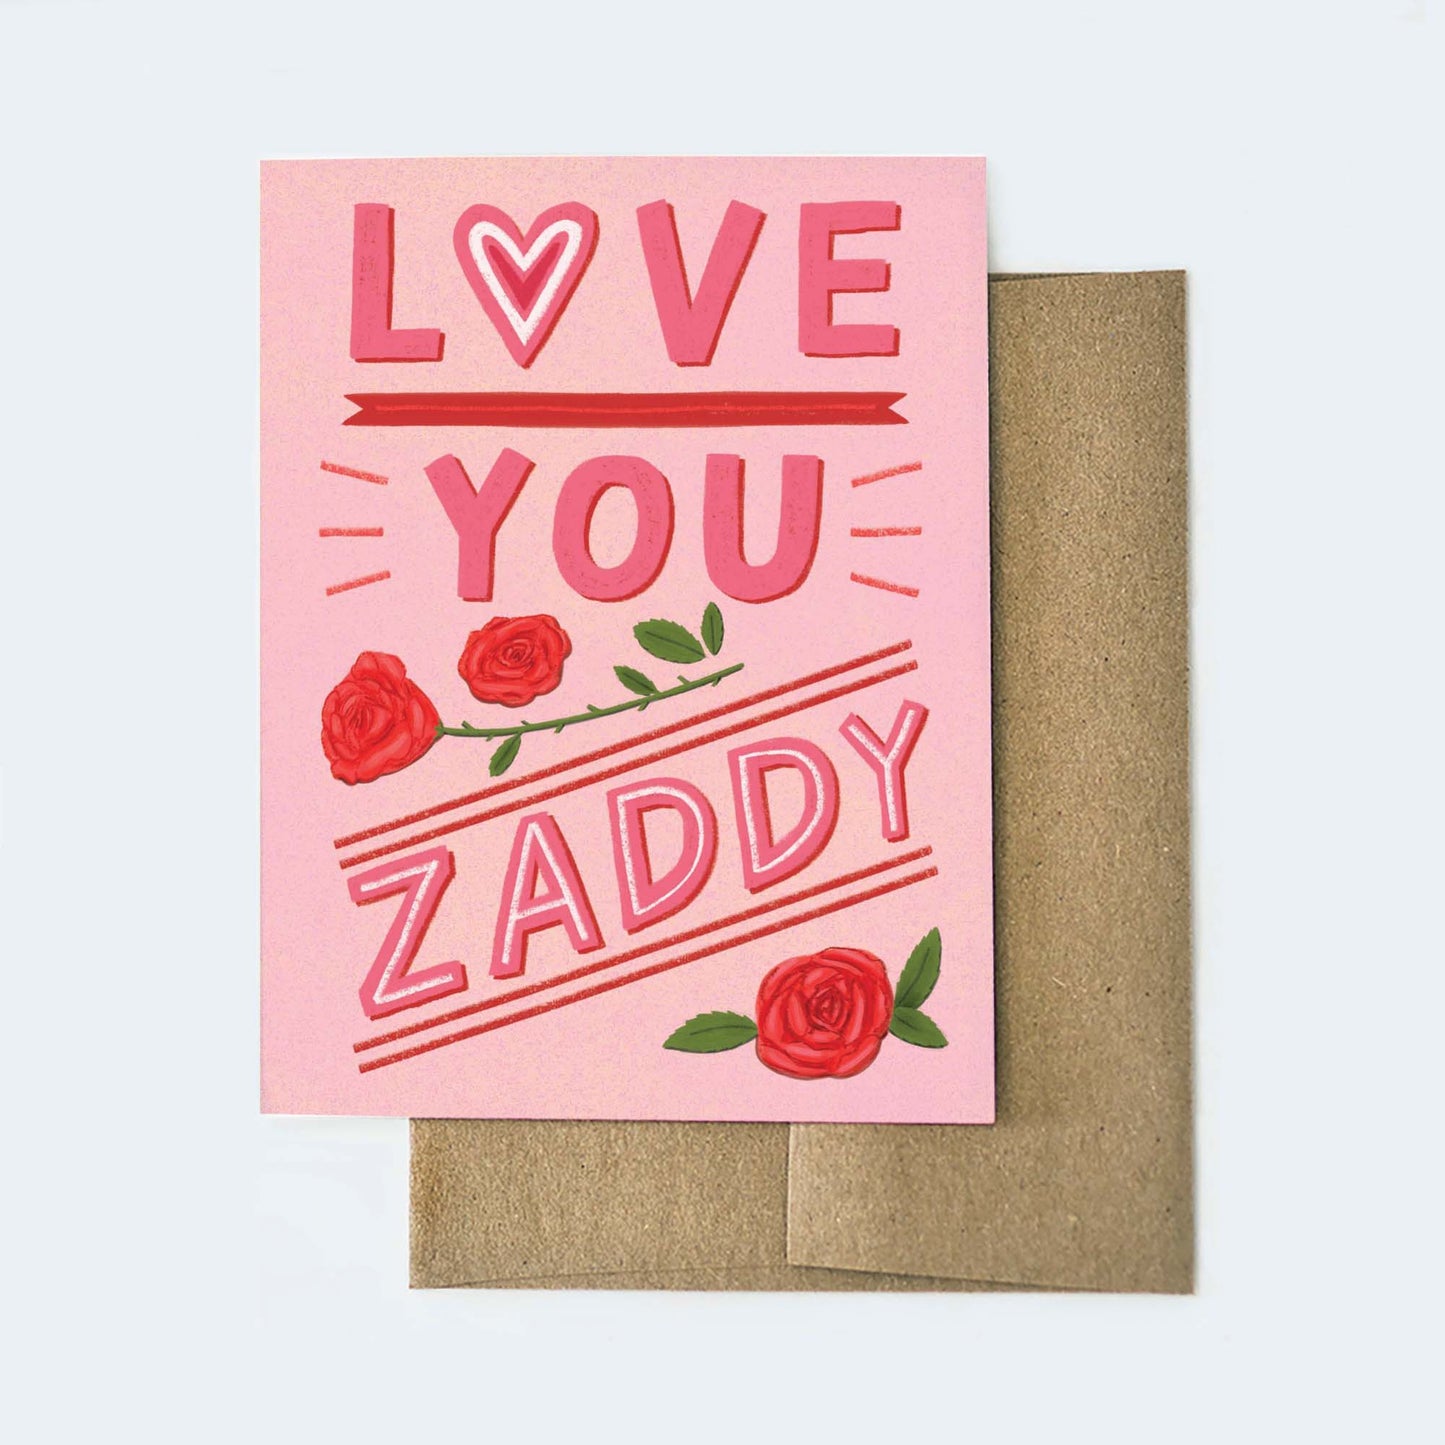 Zaddy Card